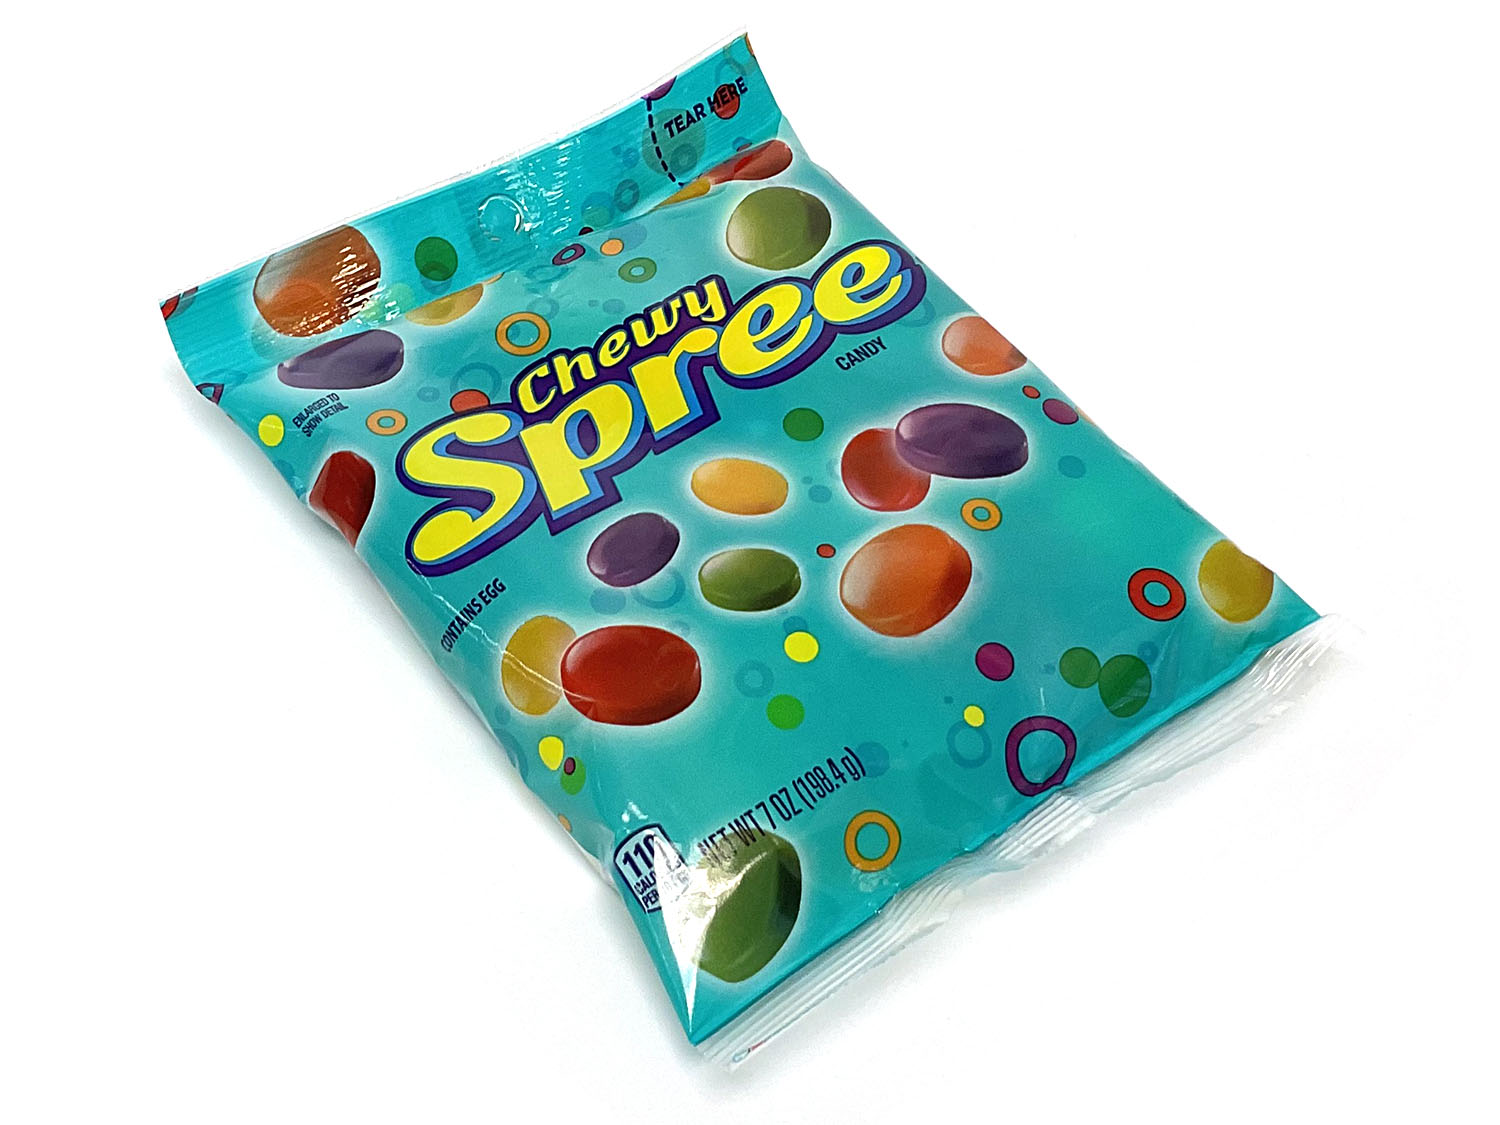 Chewy Spree - 7 oz bag